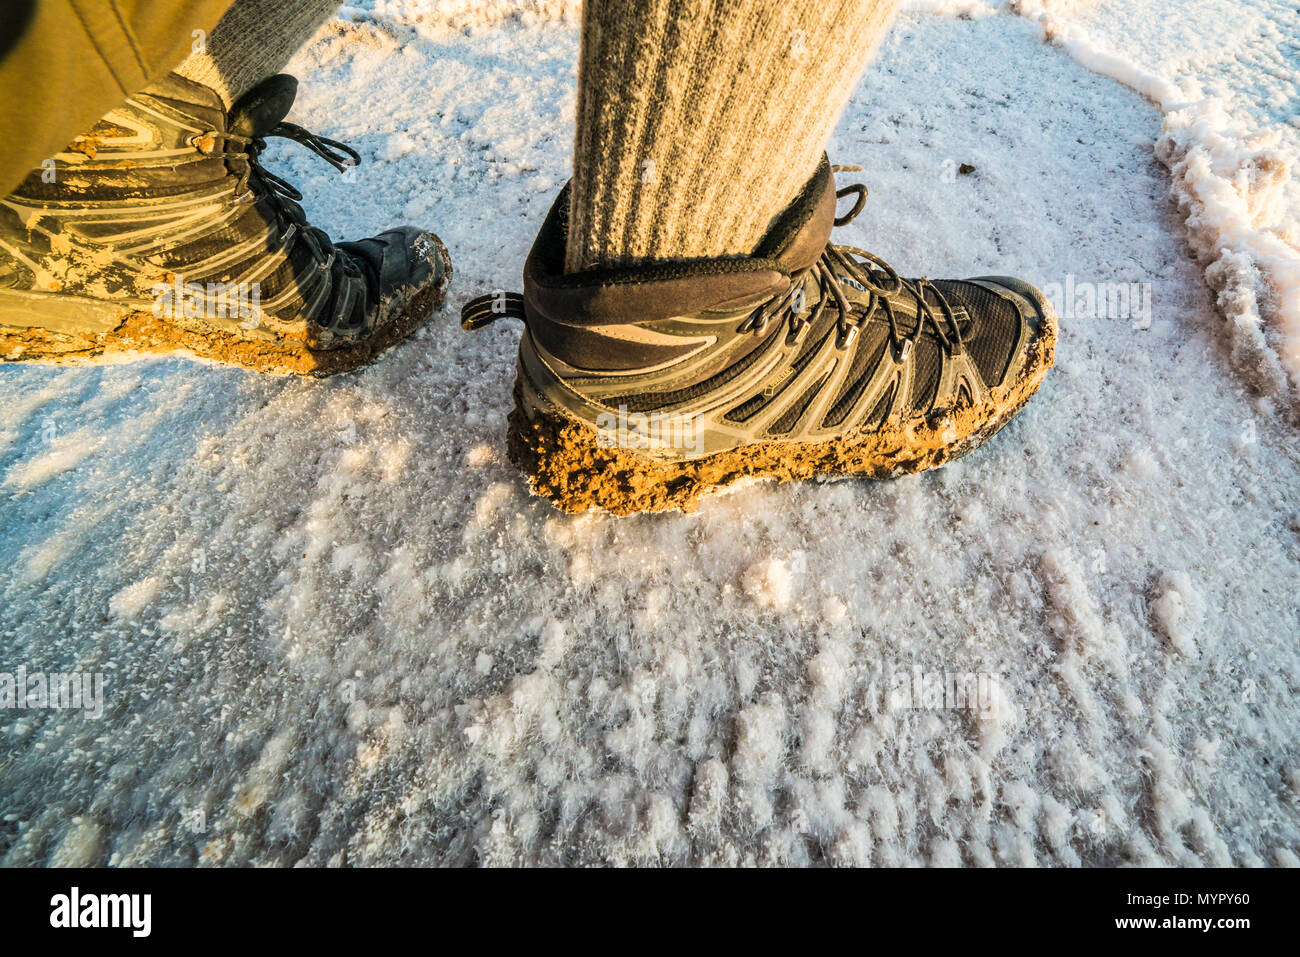 Schlamm Schuhe Wandern auf Salt Flats im Death Valley, Kalifornien  Stockfotografie - Alamy